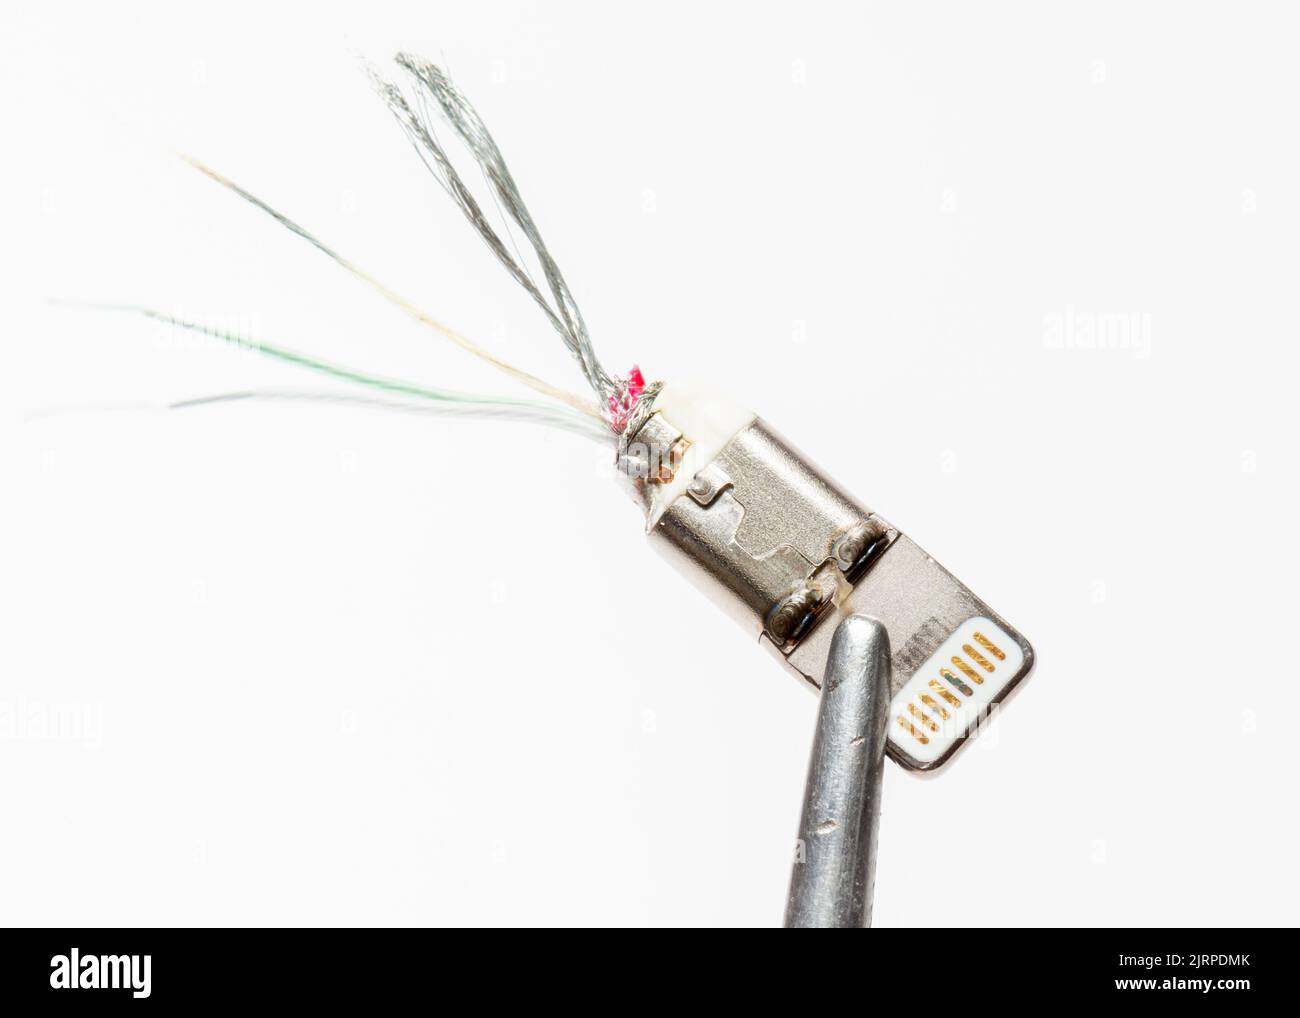 Cable de alimentación del conector Lightning de Apple iPhone dañado en blanco Foto de stock